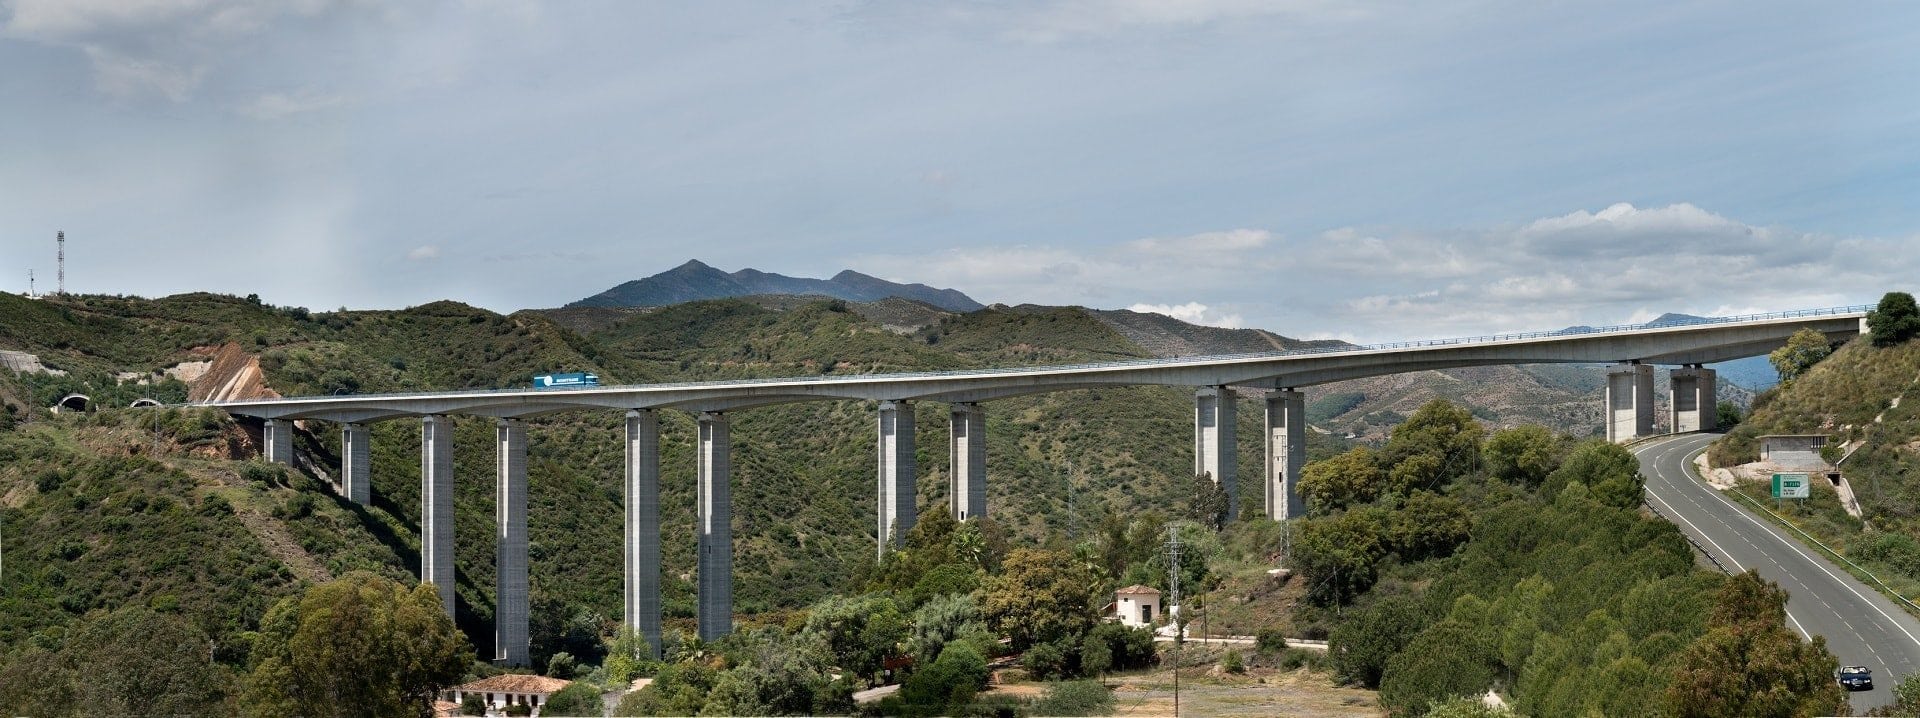 ausol highway in Malaga, Spain by Cintra